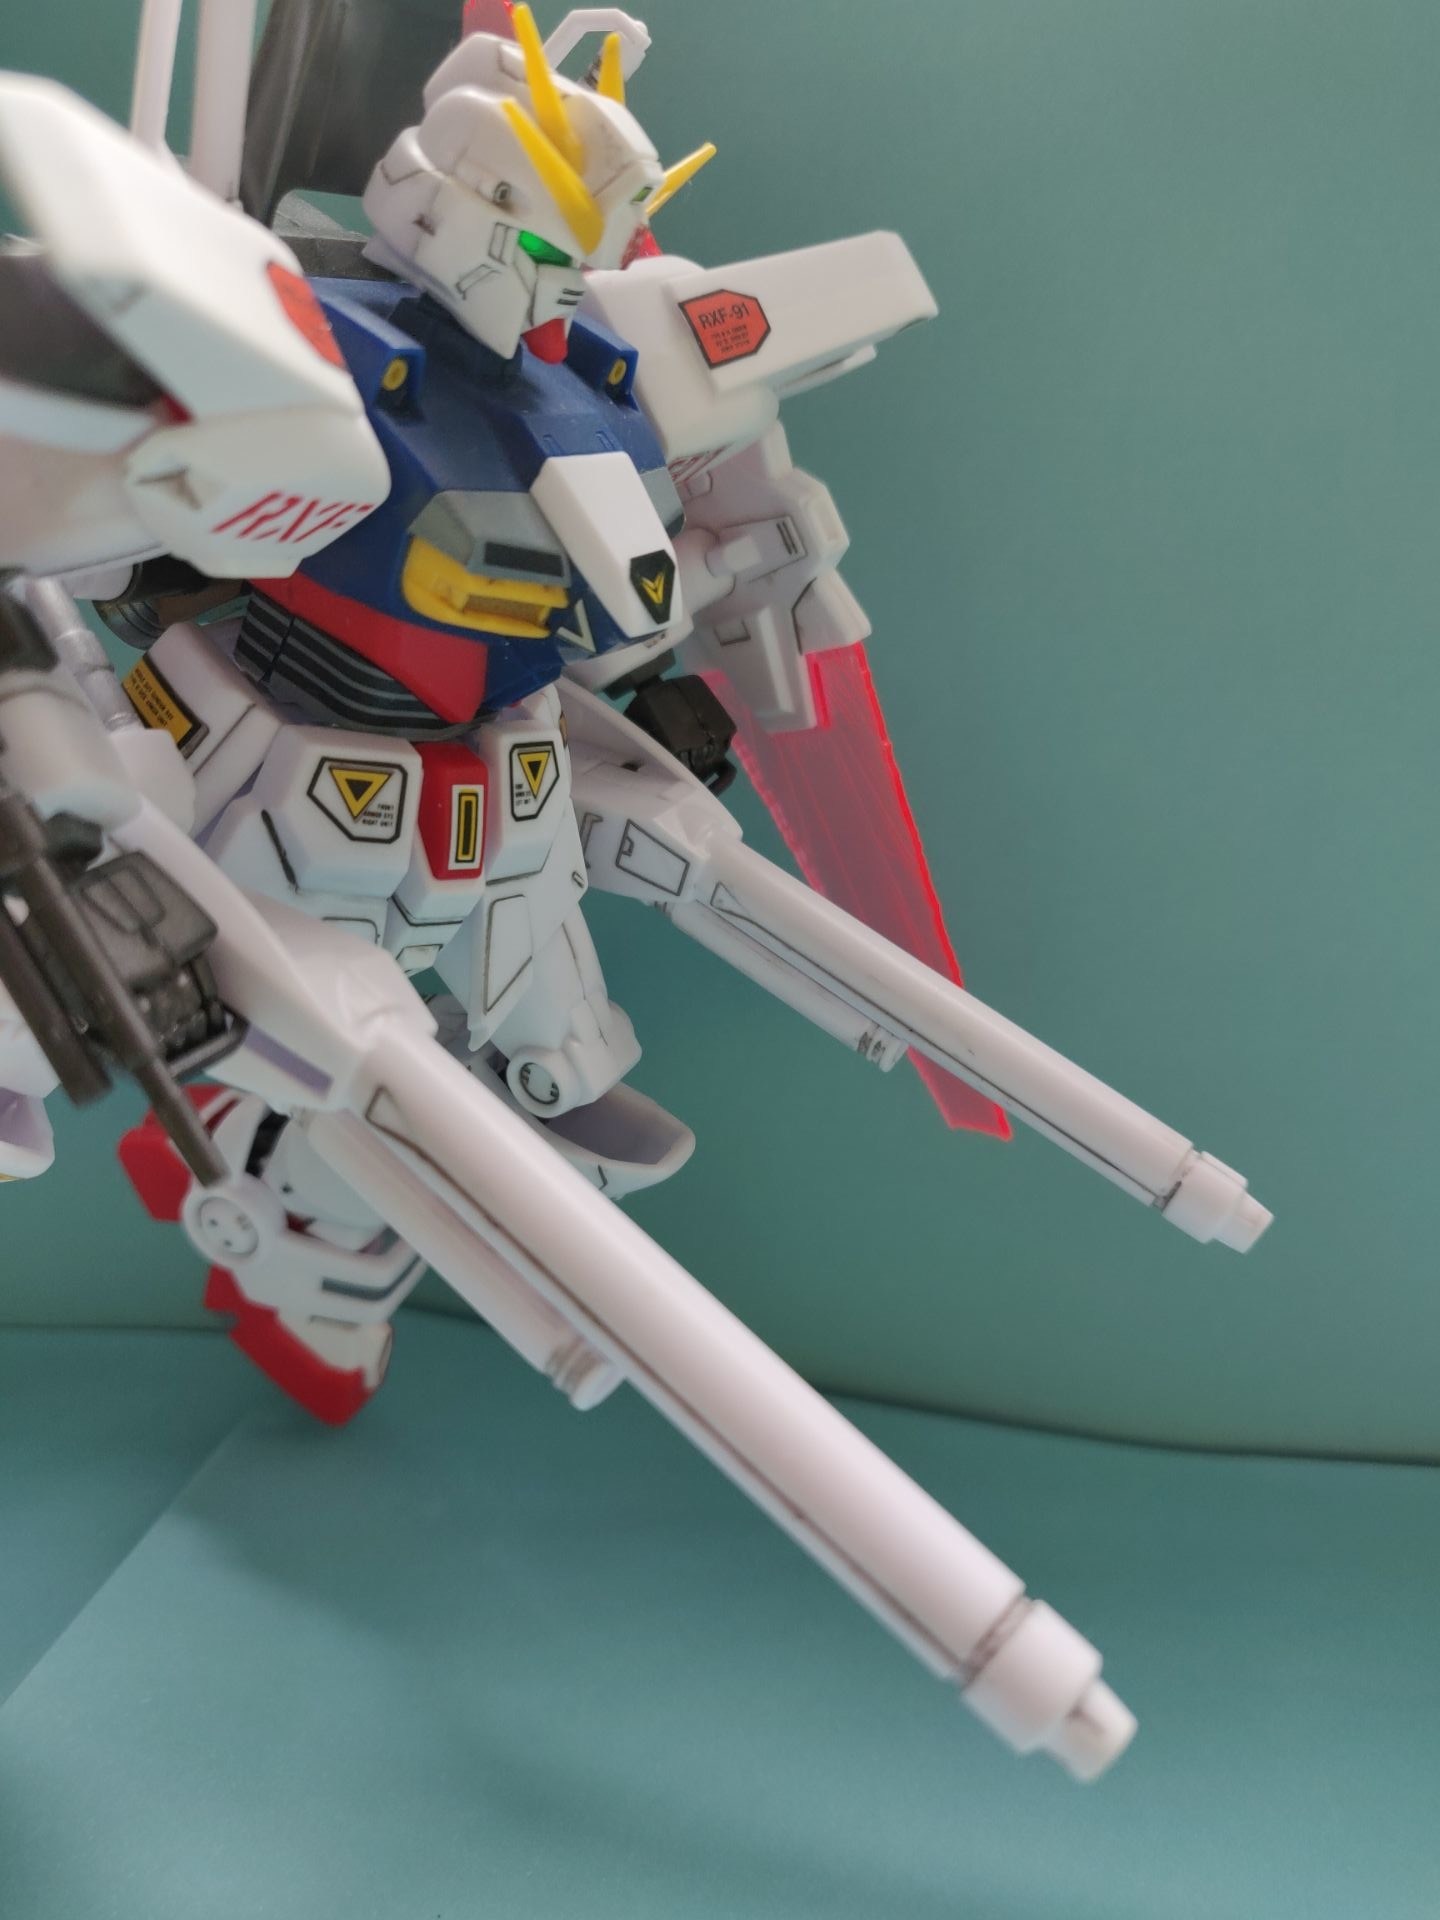 作品分享 F91的影子 影子鋼彈silhouette Gundam 模型技術與資訊哈啦板 巴哈姆特